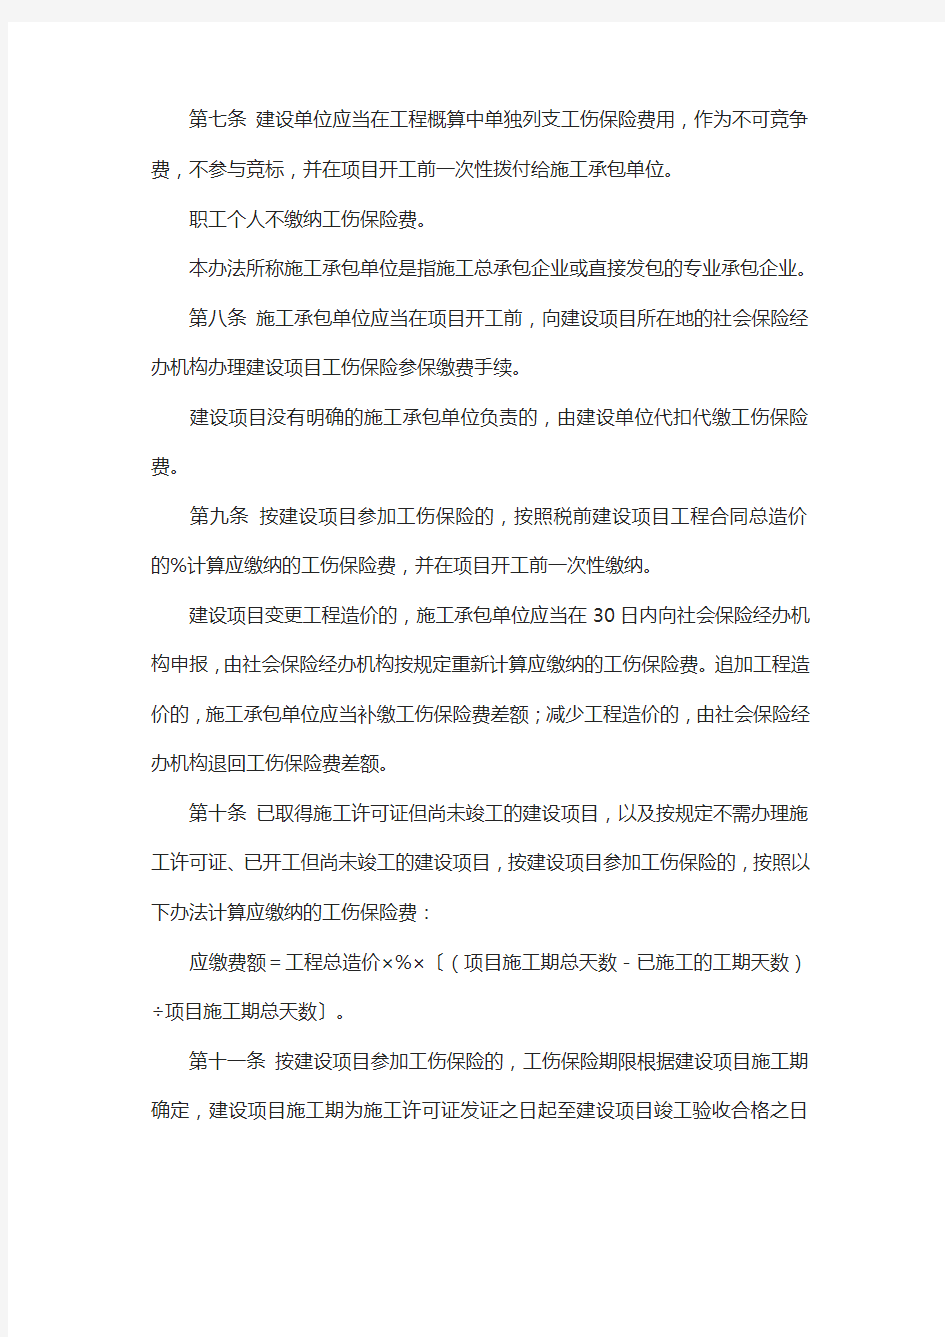 深圳市建筑施工企业参加工伤保险管理办法 (3)